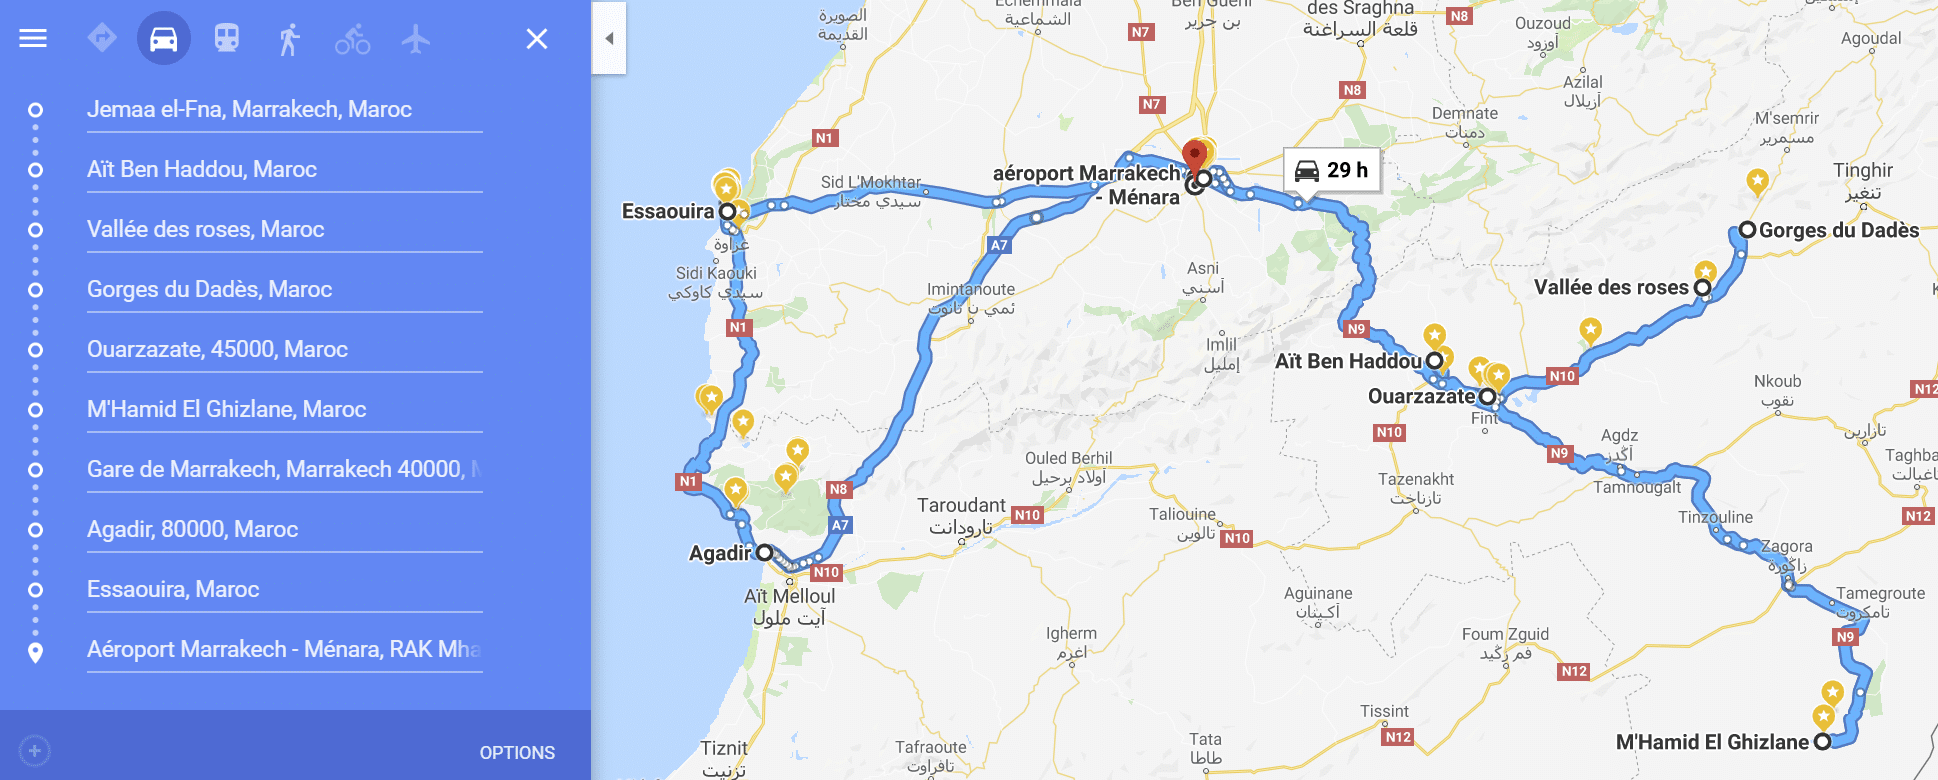 faire un road trip au maroc